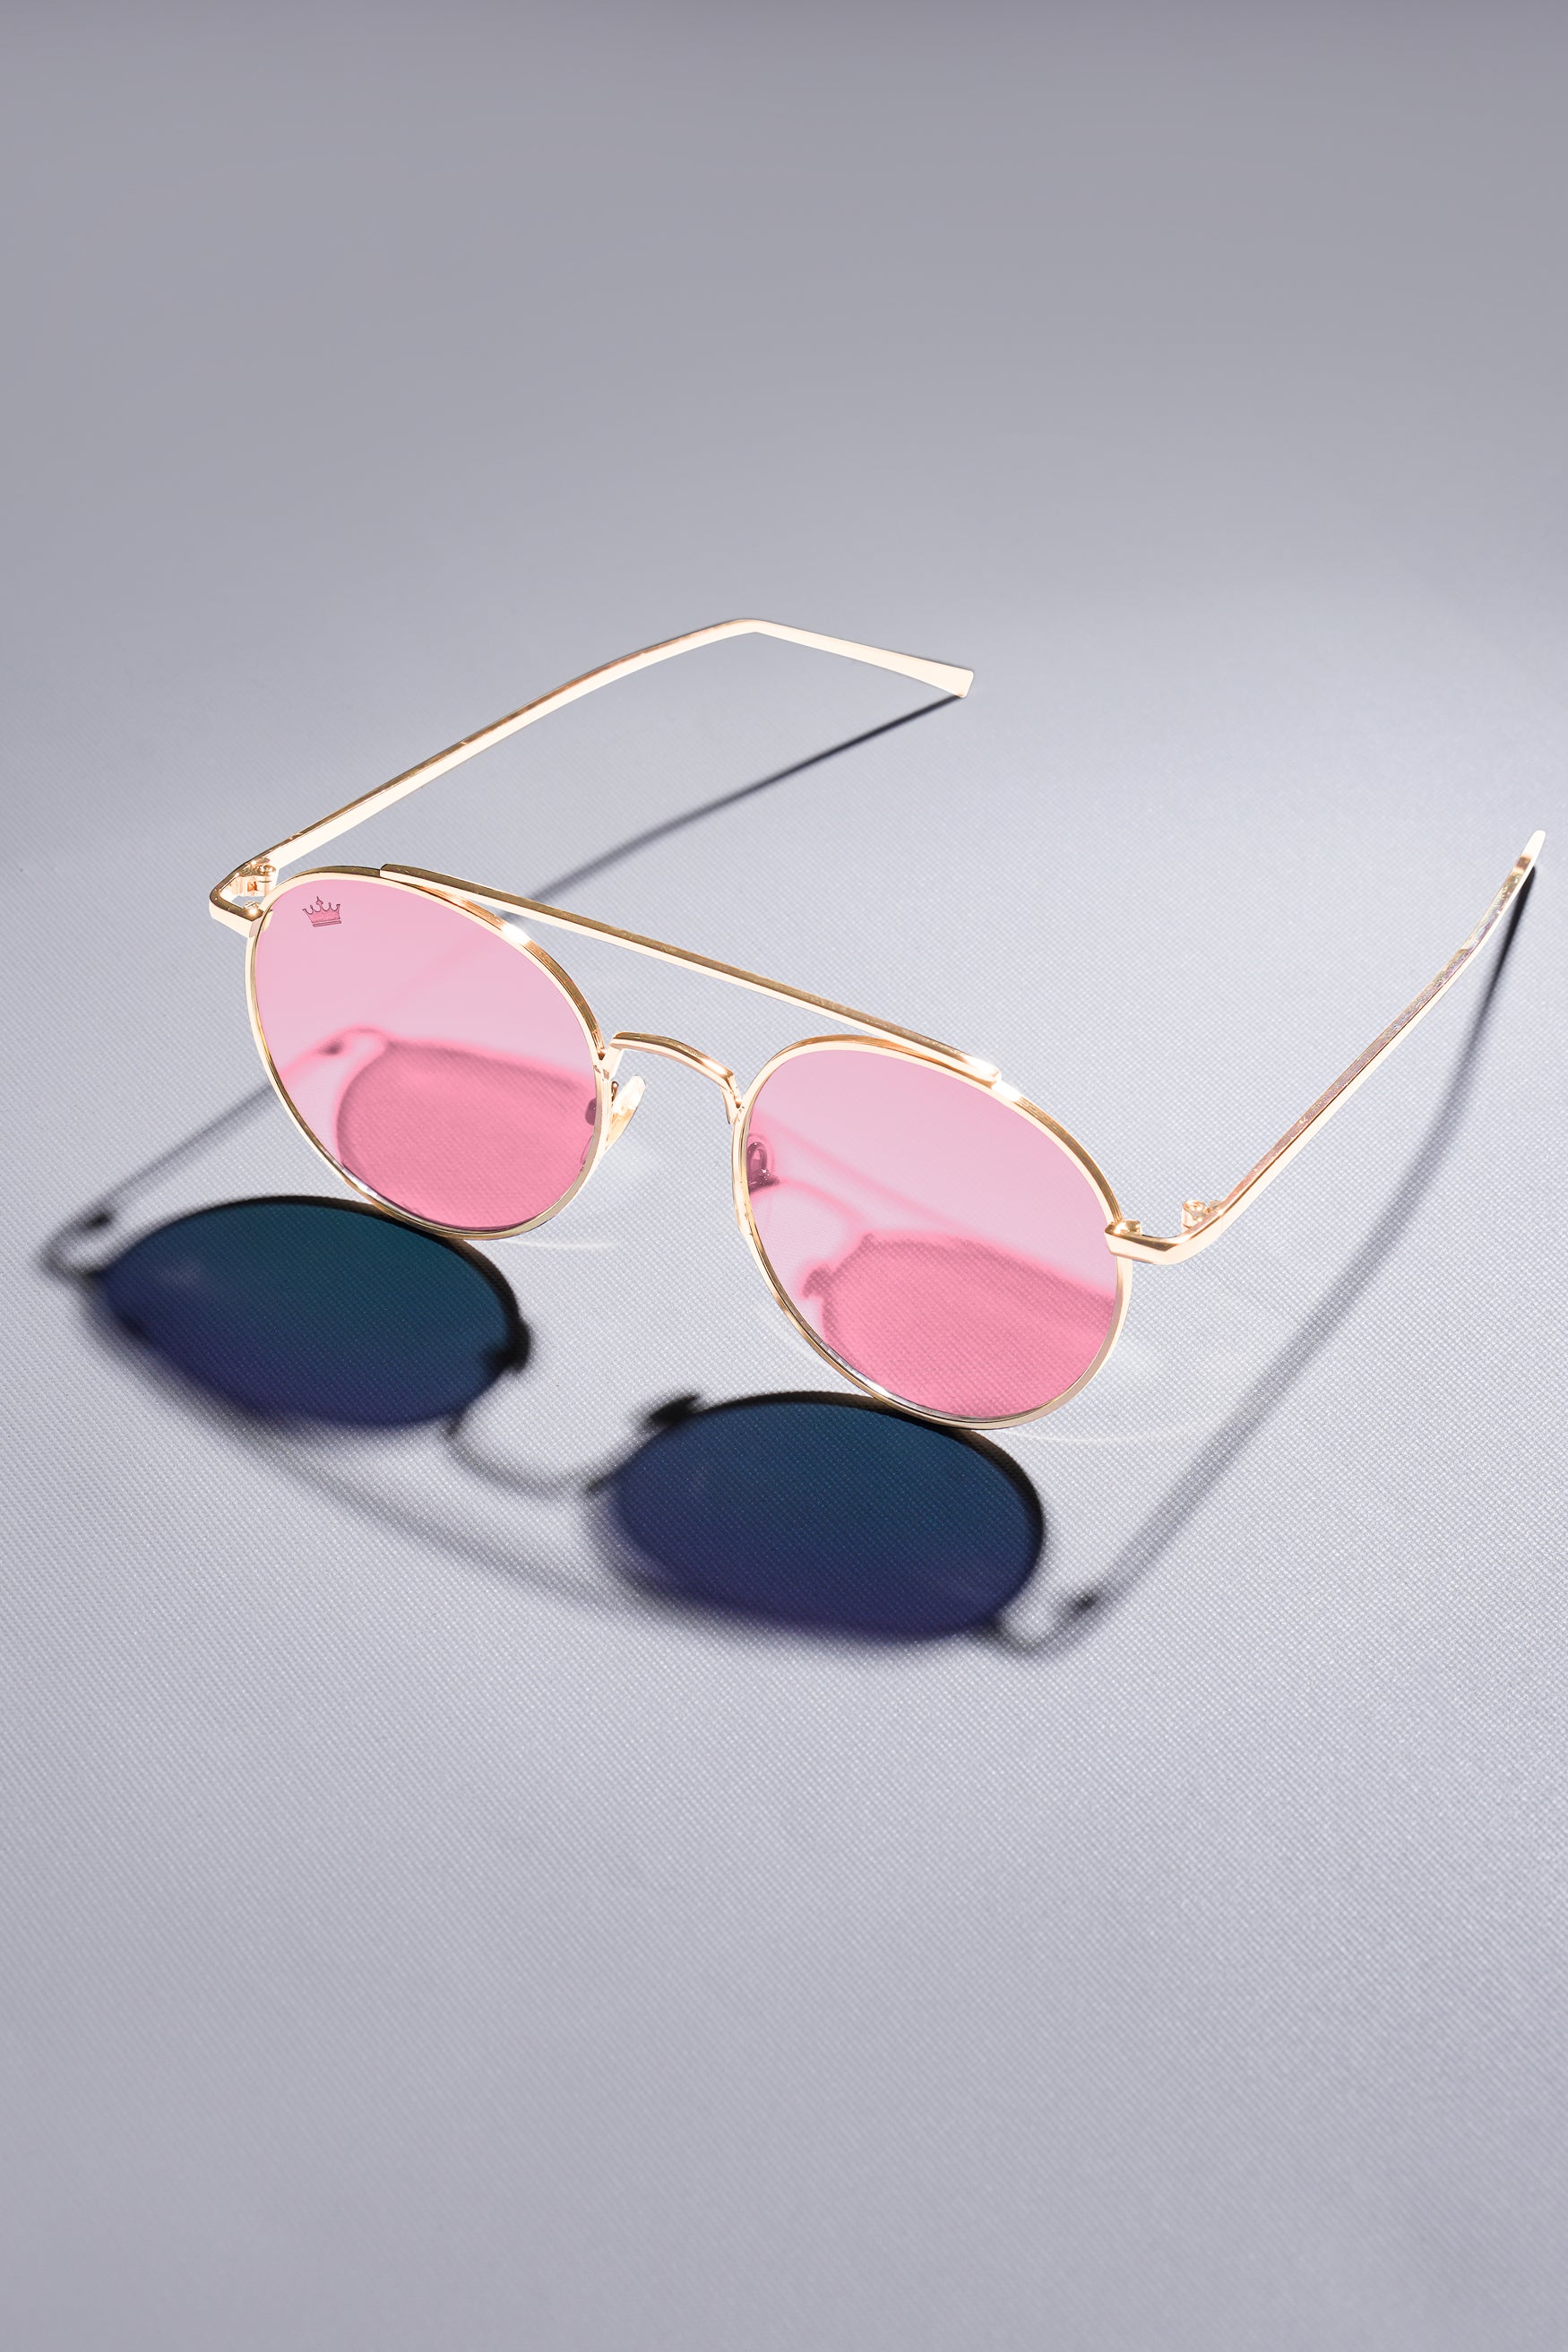 Designer Sunglasses for Women | Womens Sunglasses